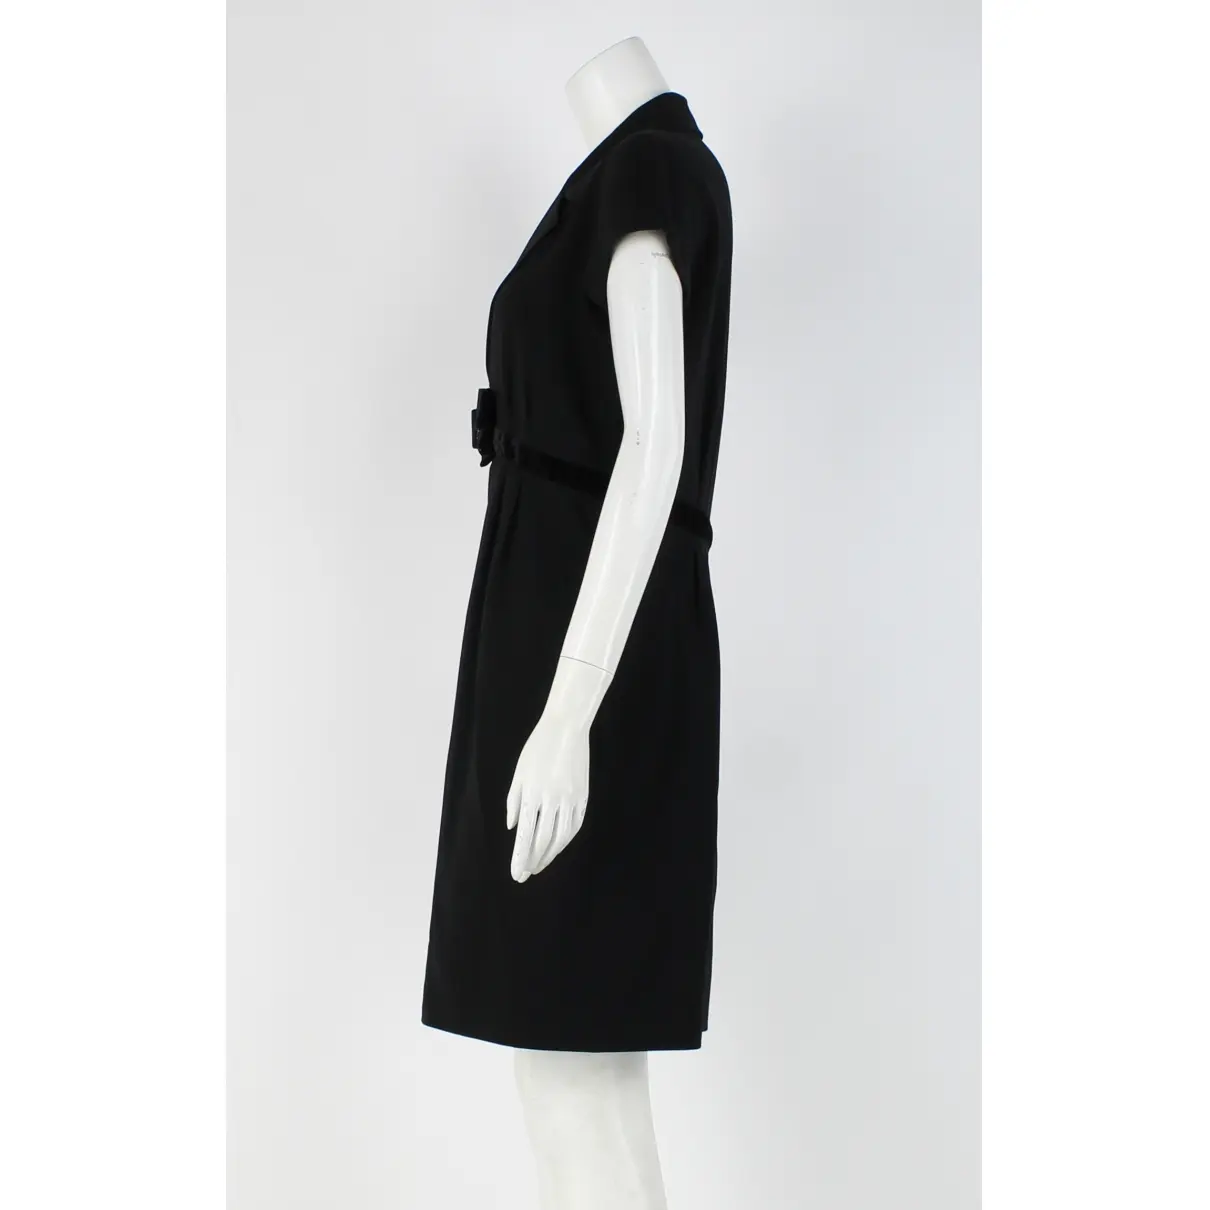 Buy Moschino Dress online